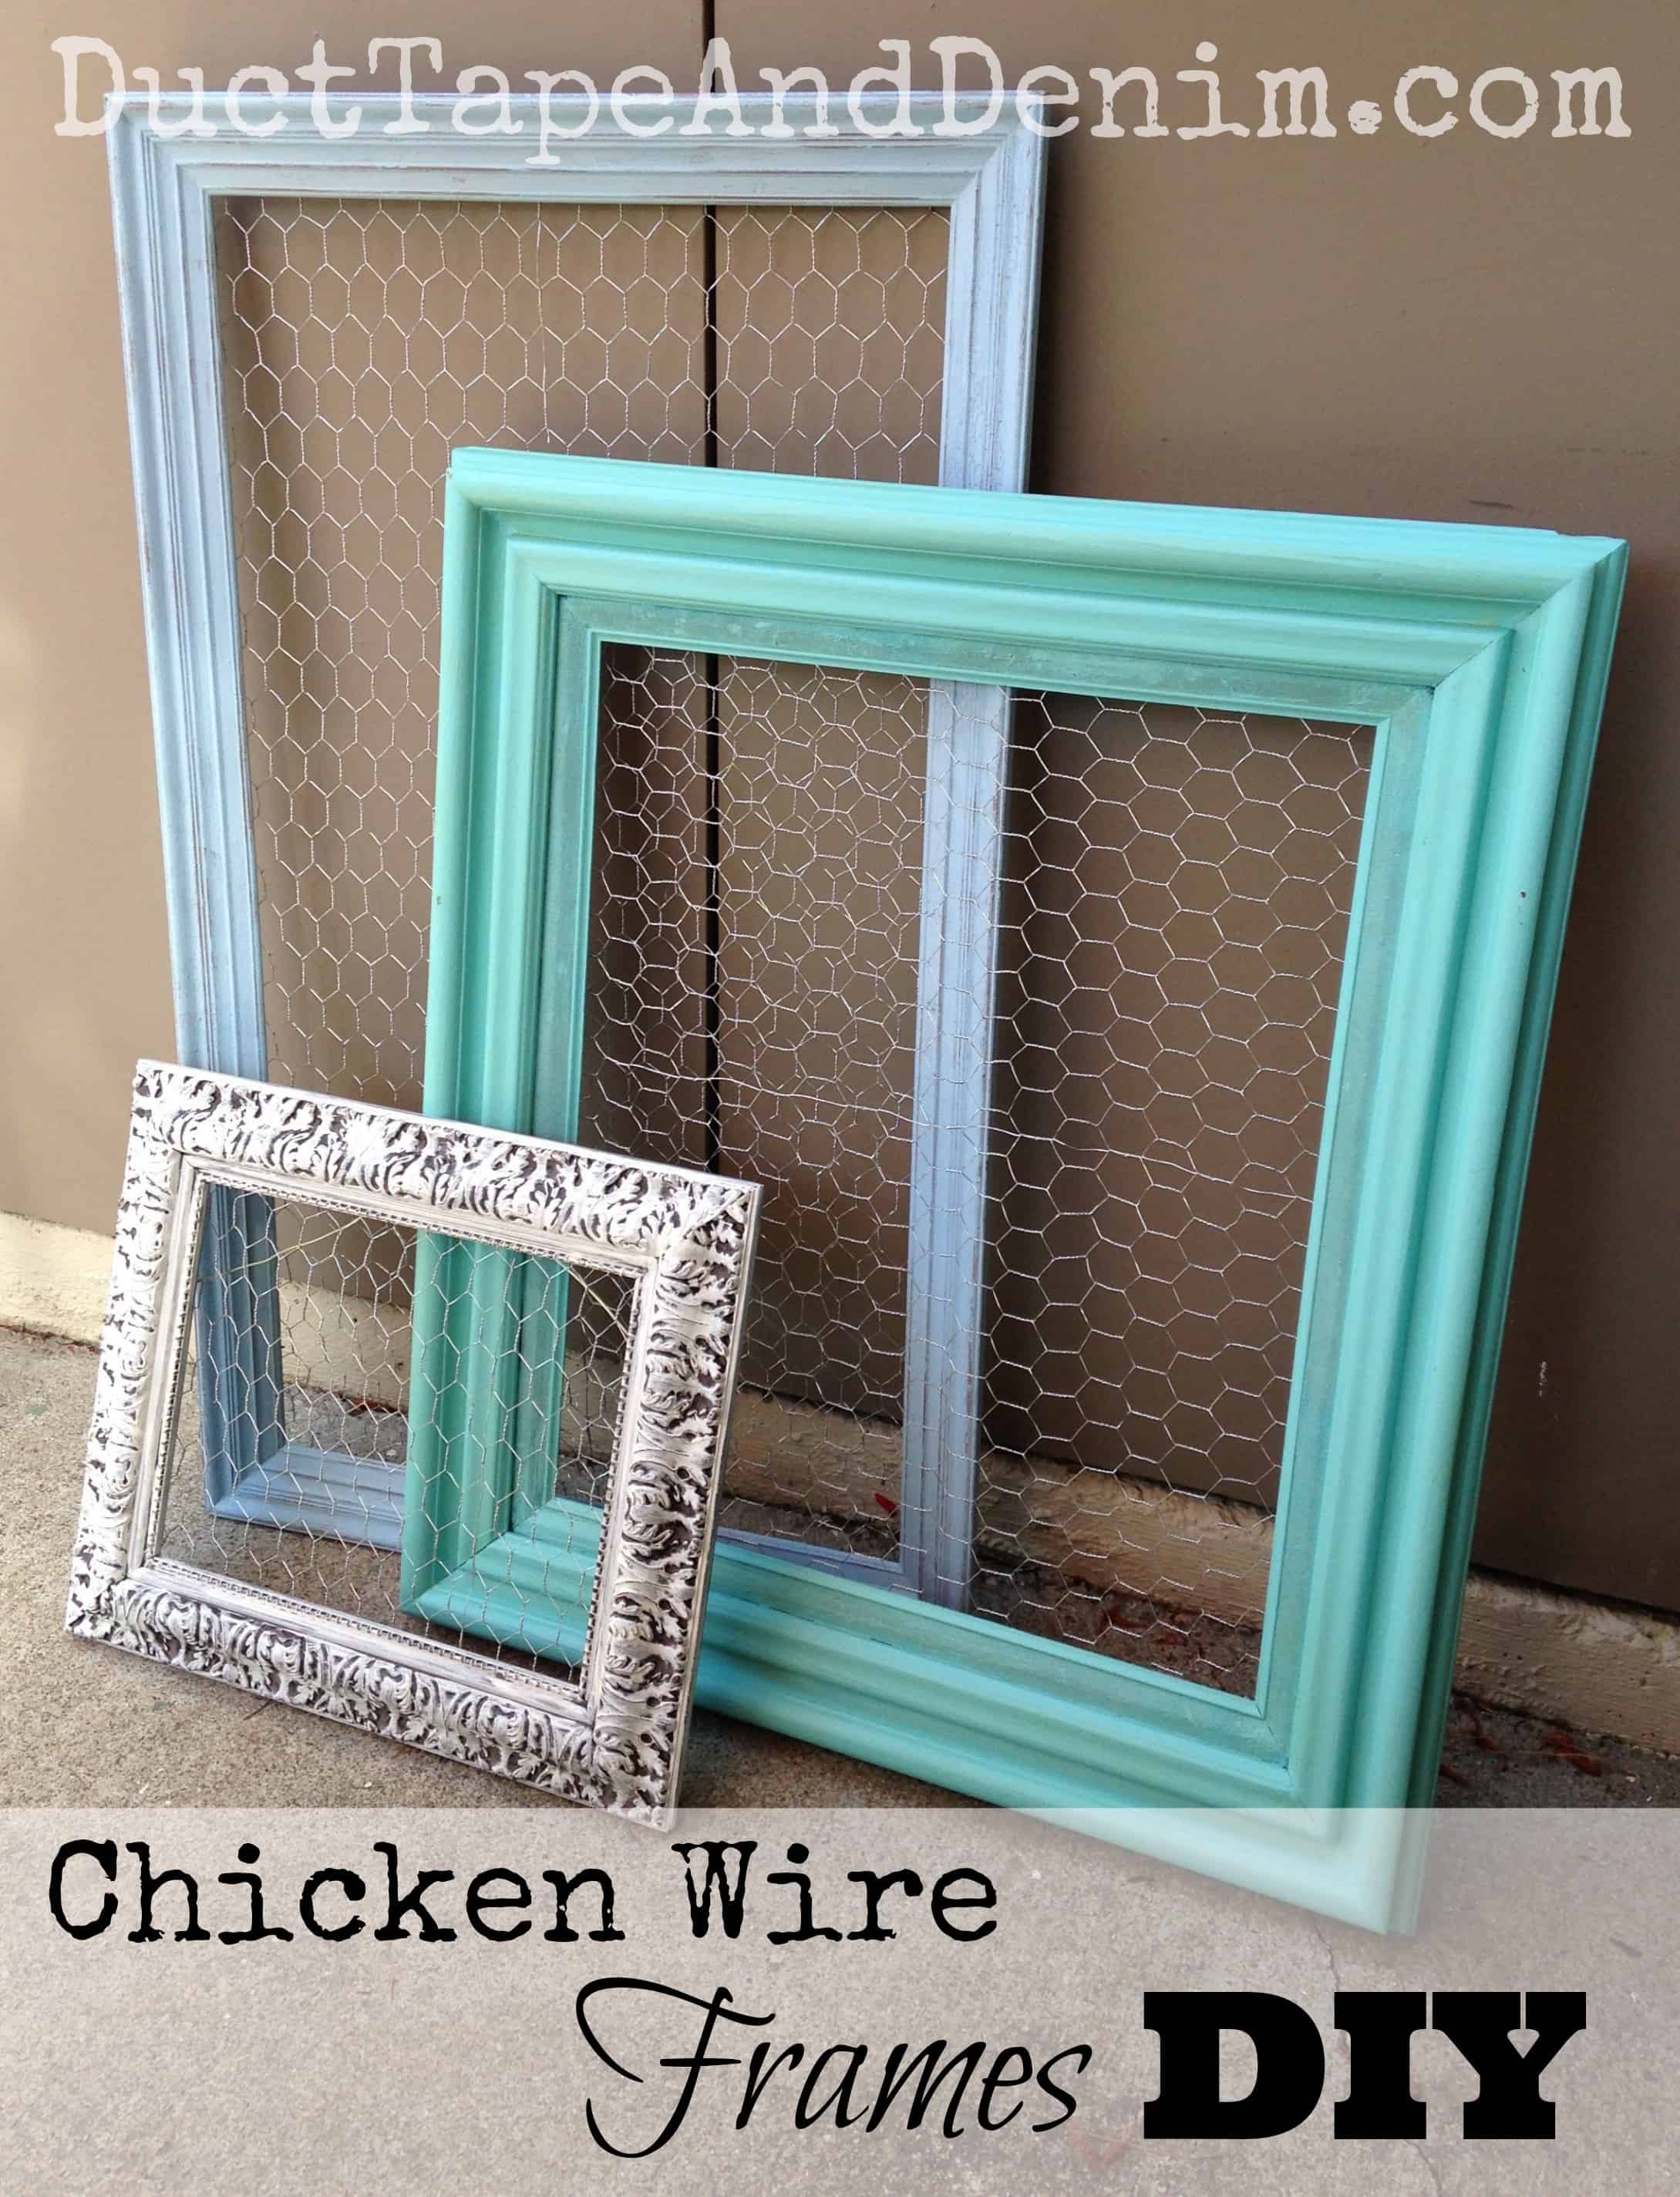 Chicken Wire Frames - DIY Repurposed Thrift Store Find